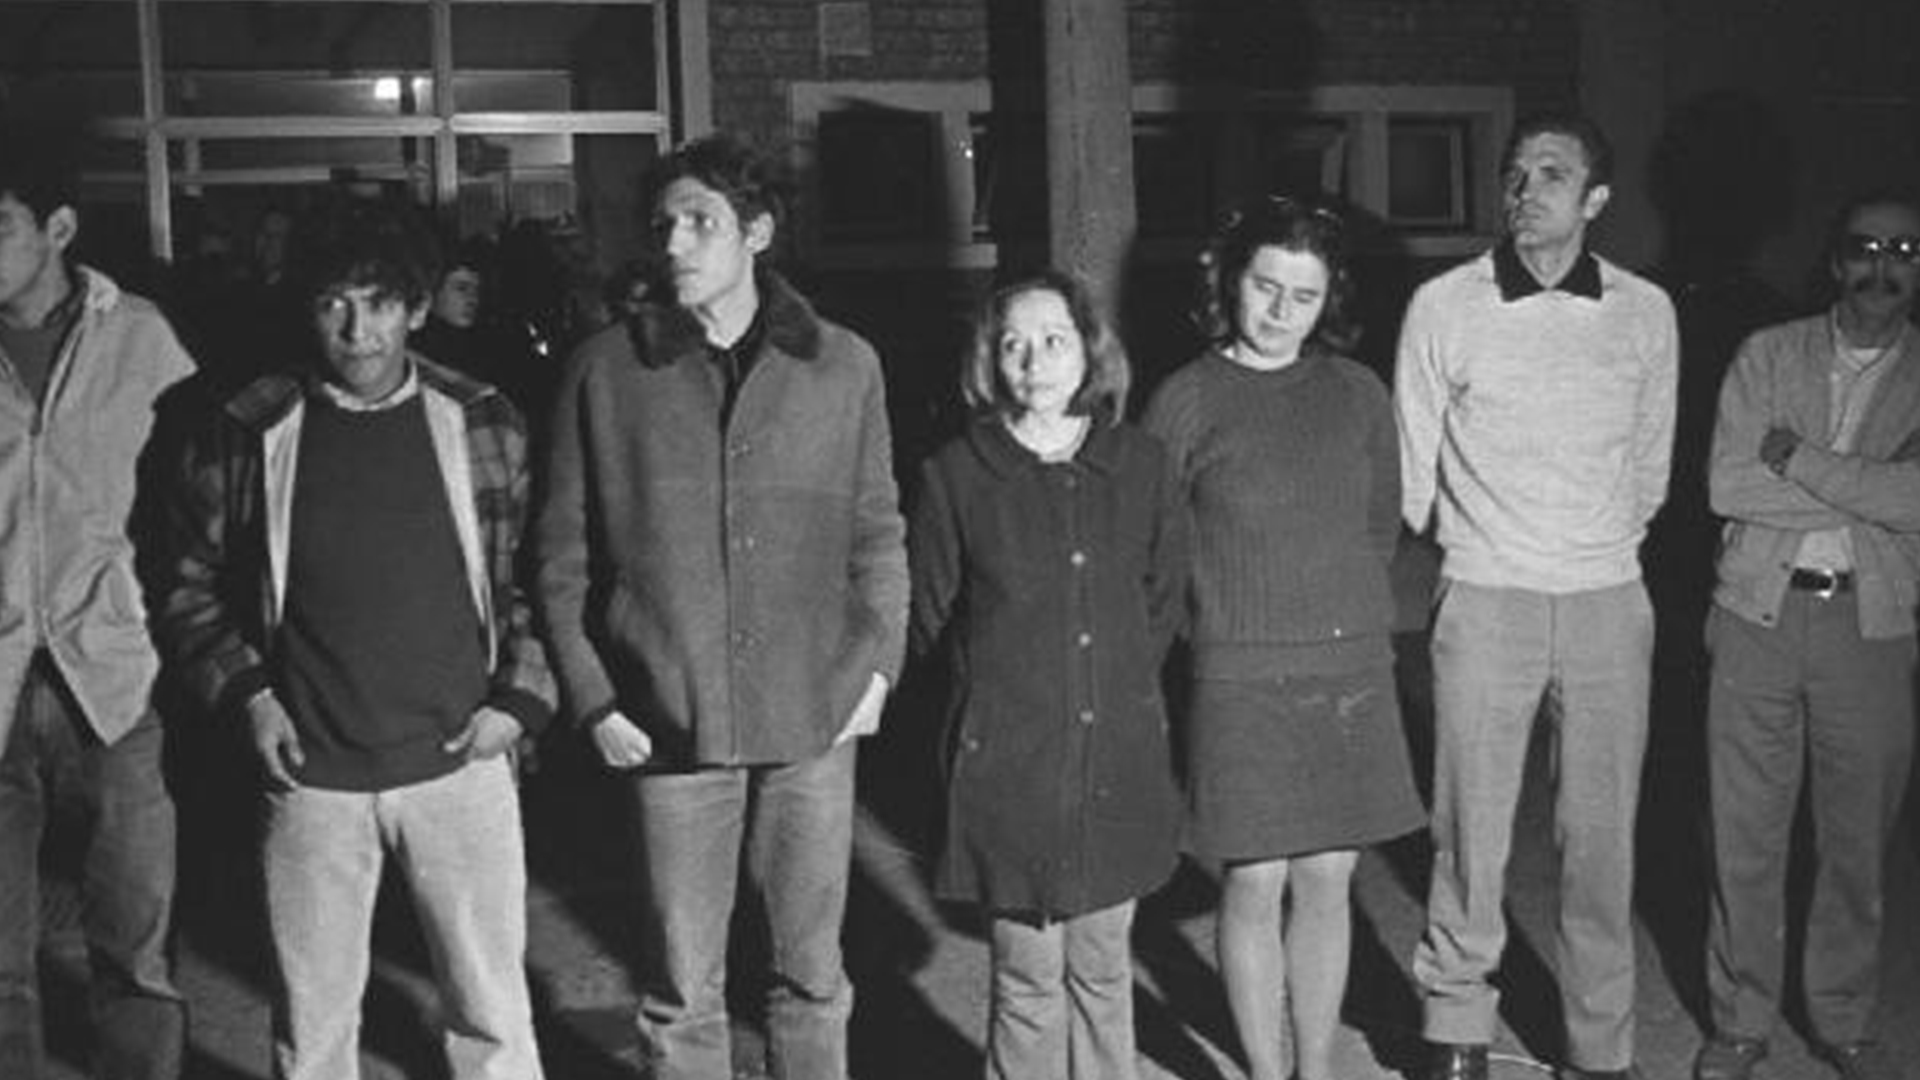 Los guerrilleros detenidos en agosto de 1972 después de fugarse del penal de Rawson e intentar tomar un avión en Trelew para escapar a Chile